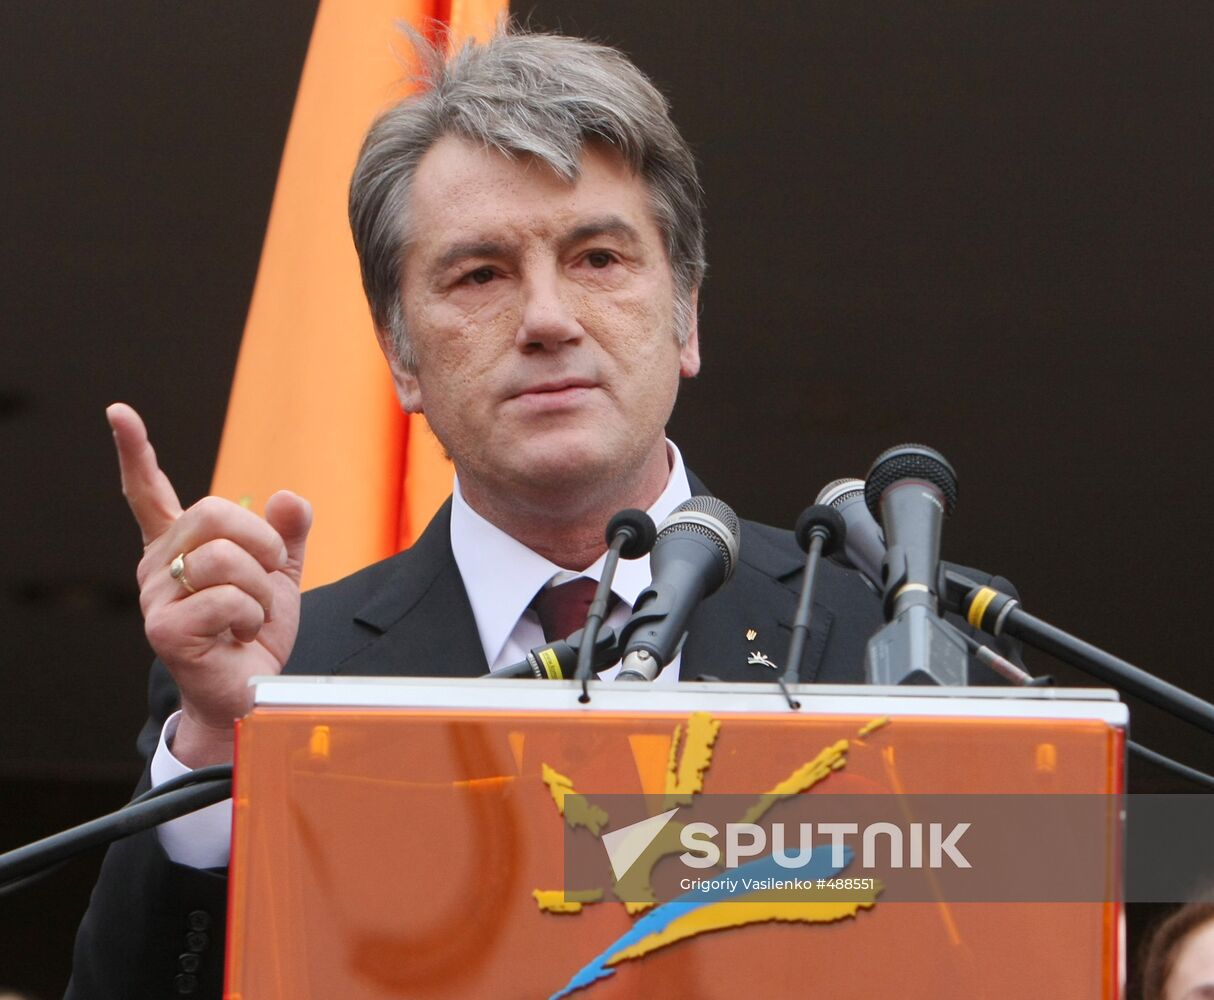 Ukrainian President Viktor Yushchenko files to run for new term